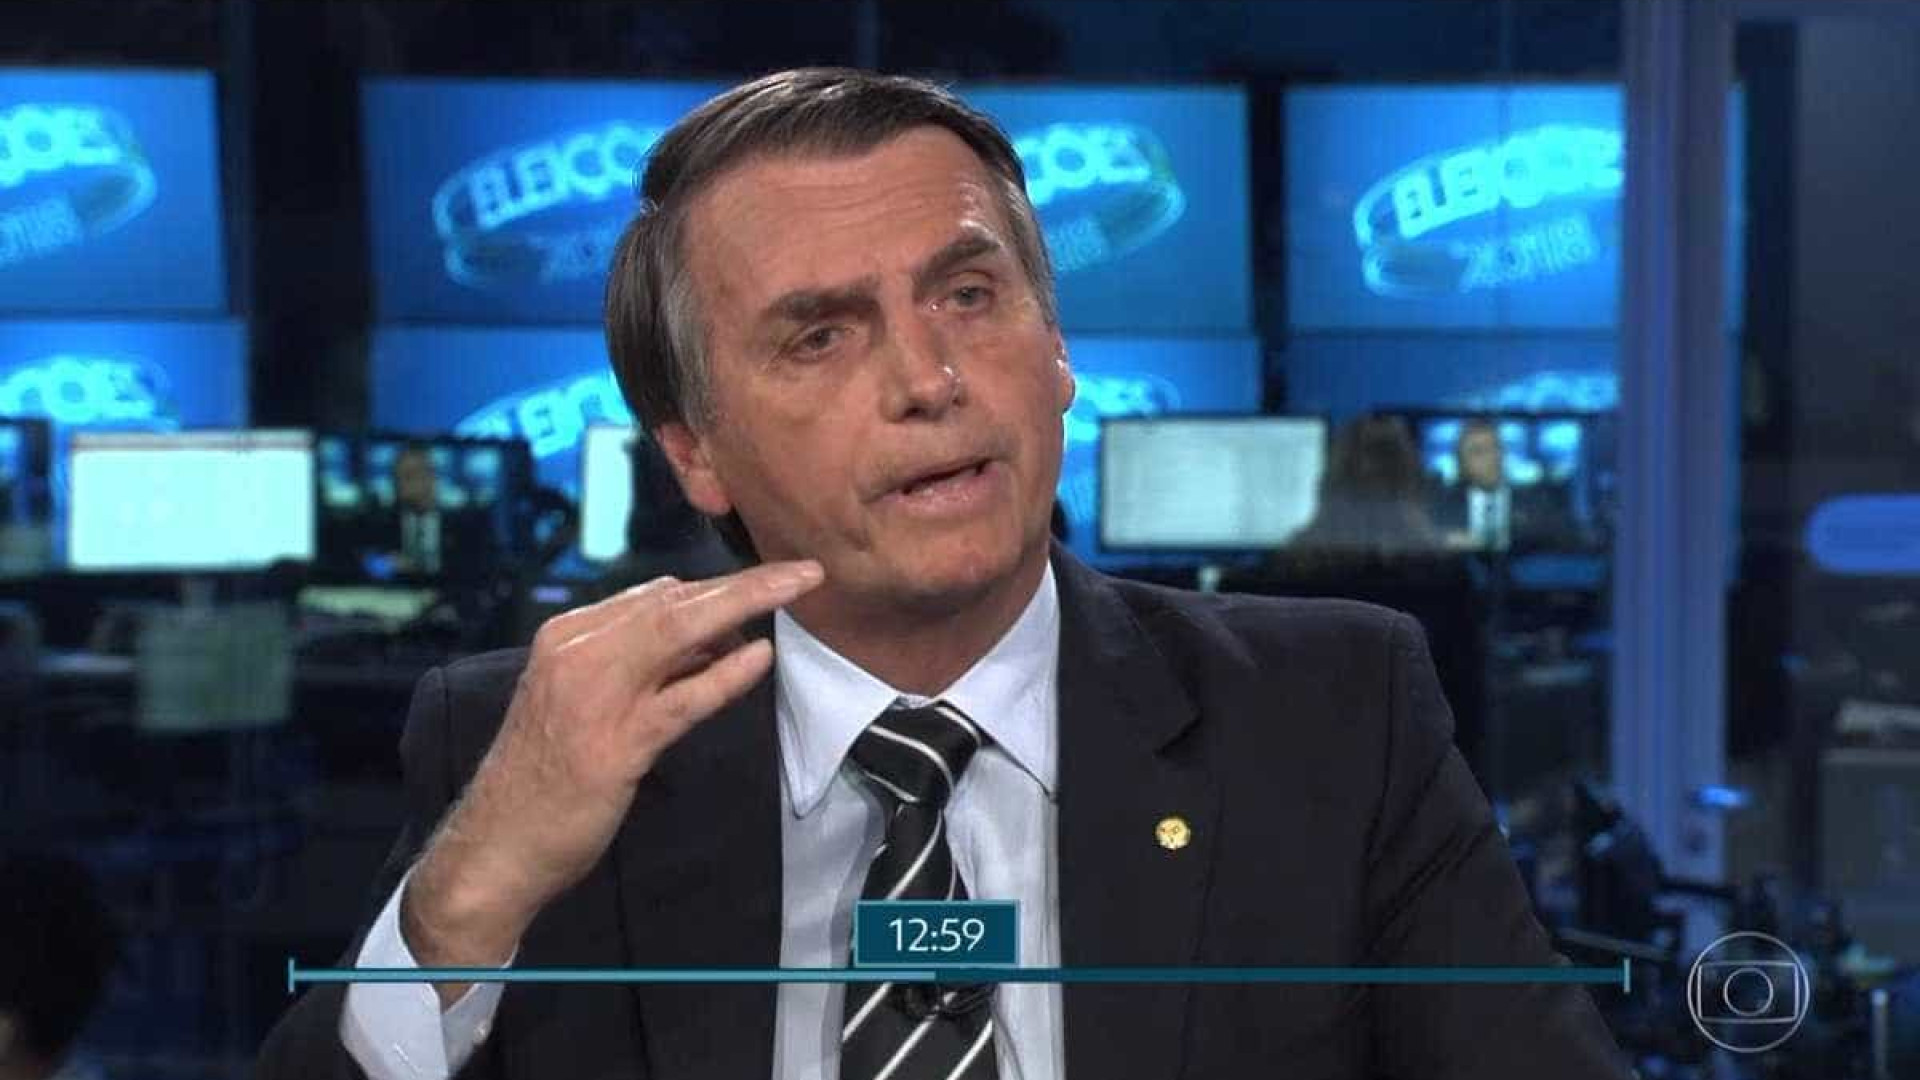 Ao falar de economia, Bolsonaro cita ‘casamento’ e ‘alfineta’ Bonner